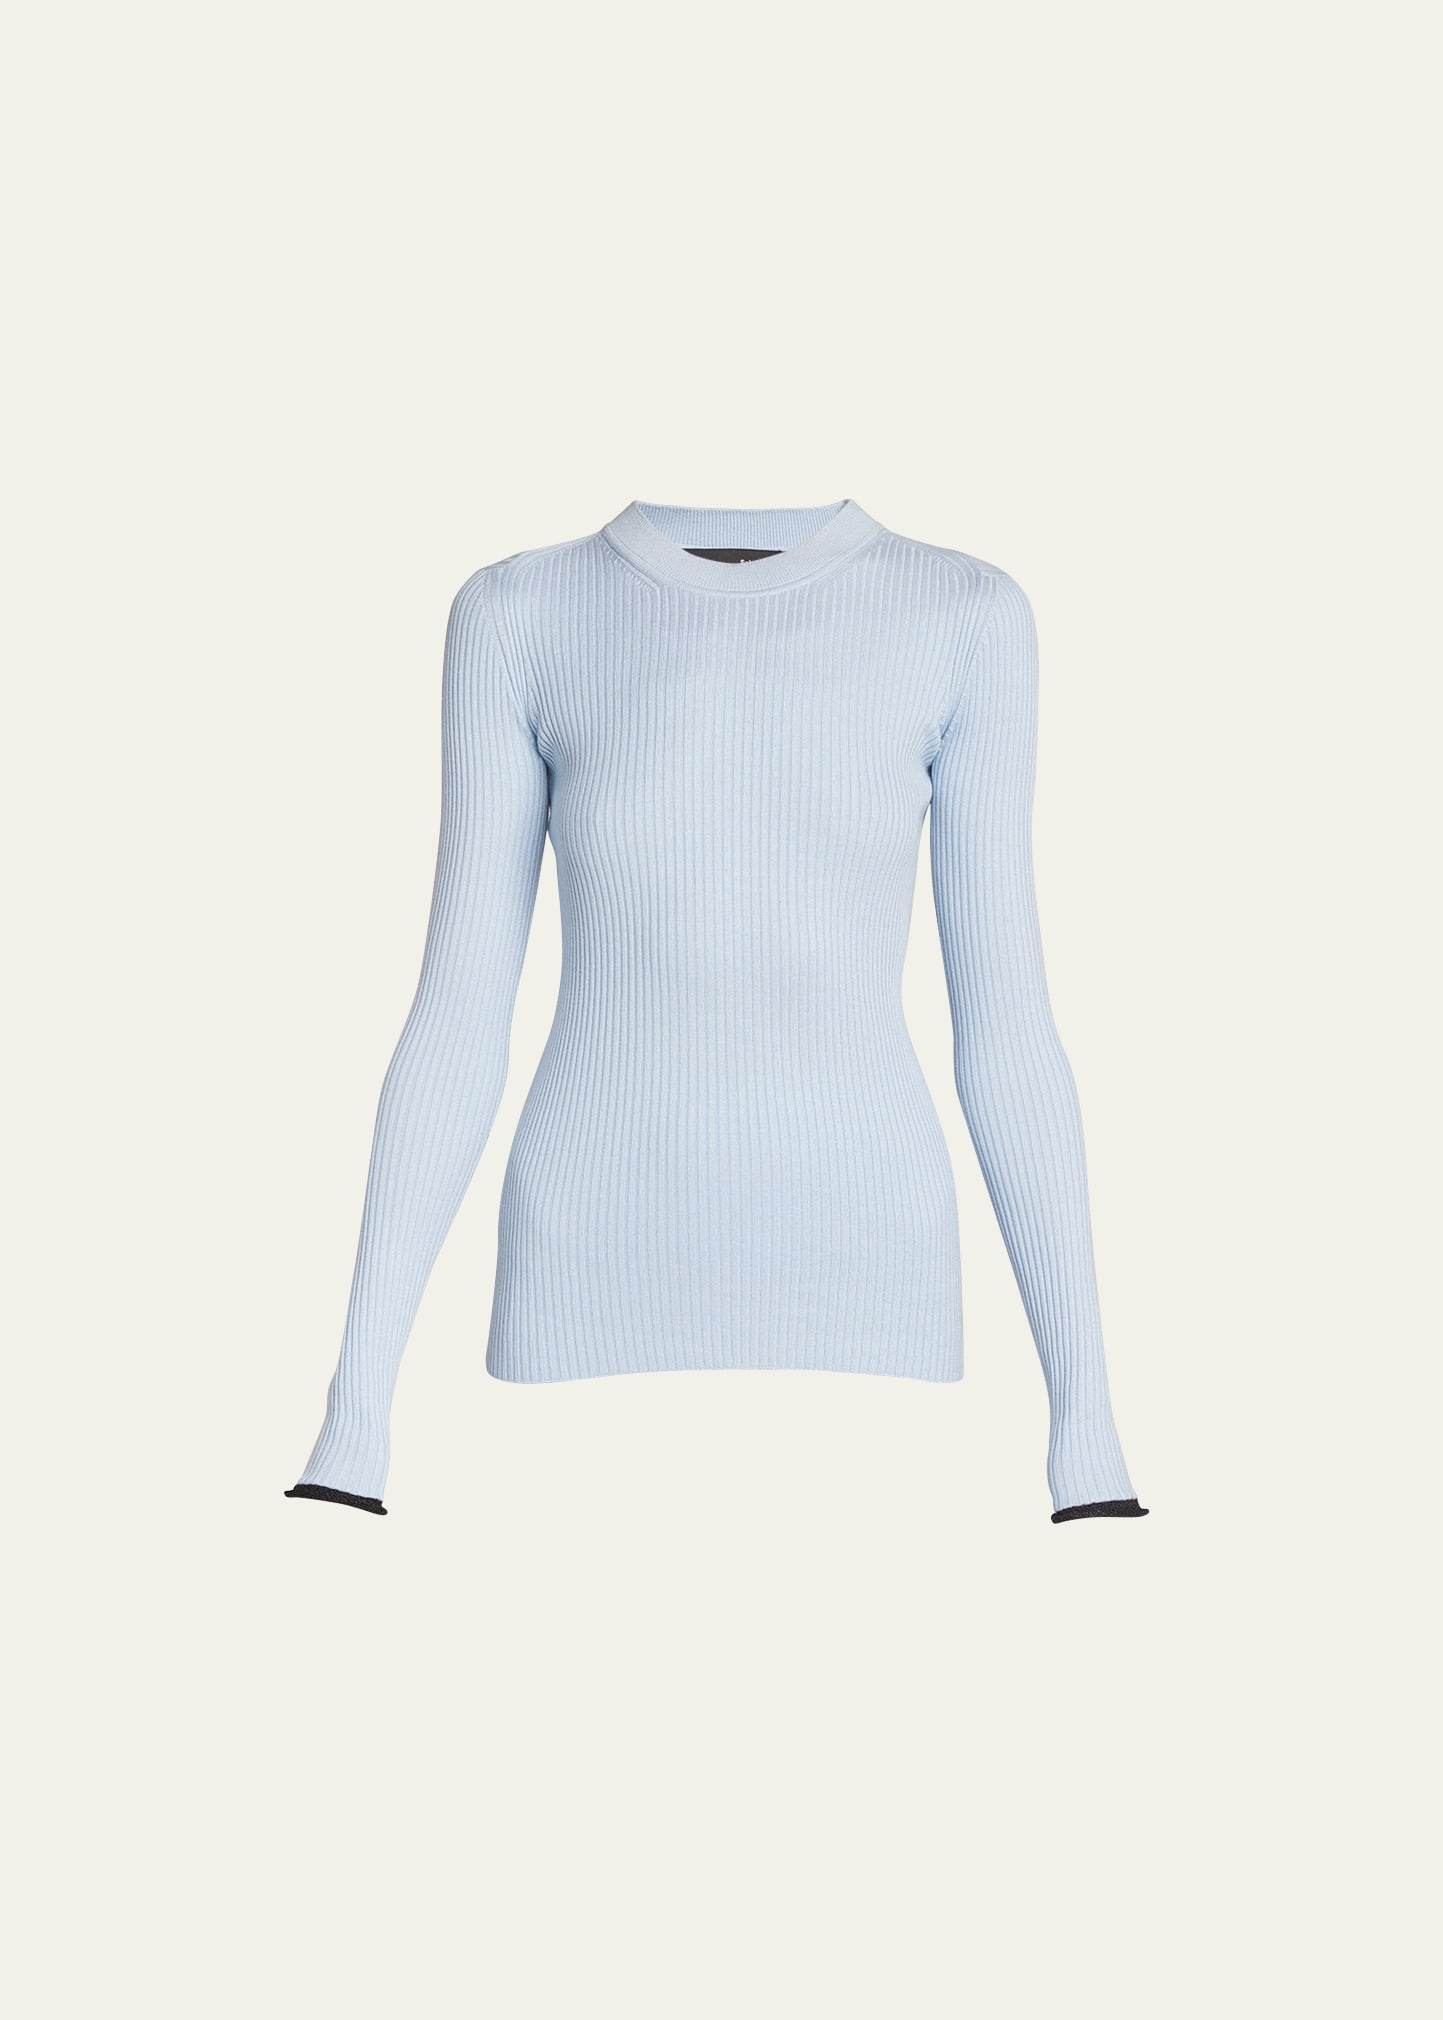 Proenza Schouler Silk Cashmere Sweater In Light Blue